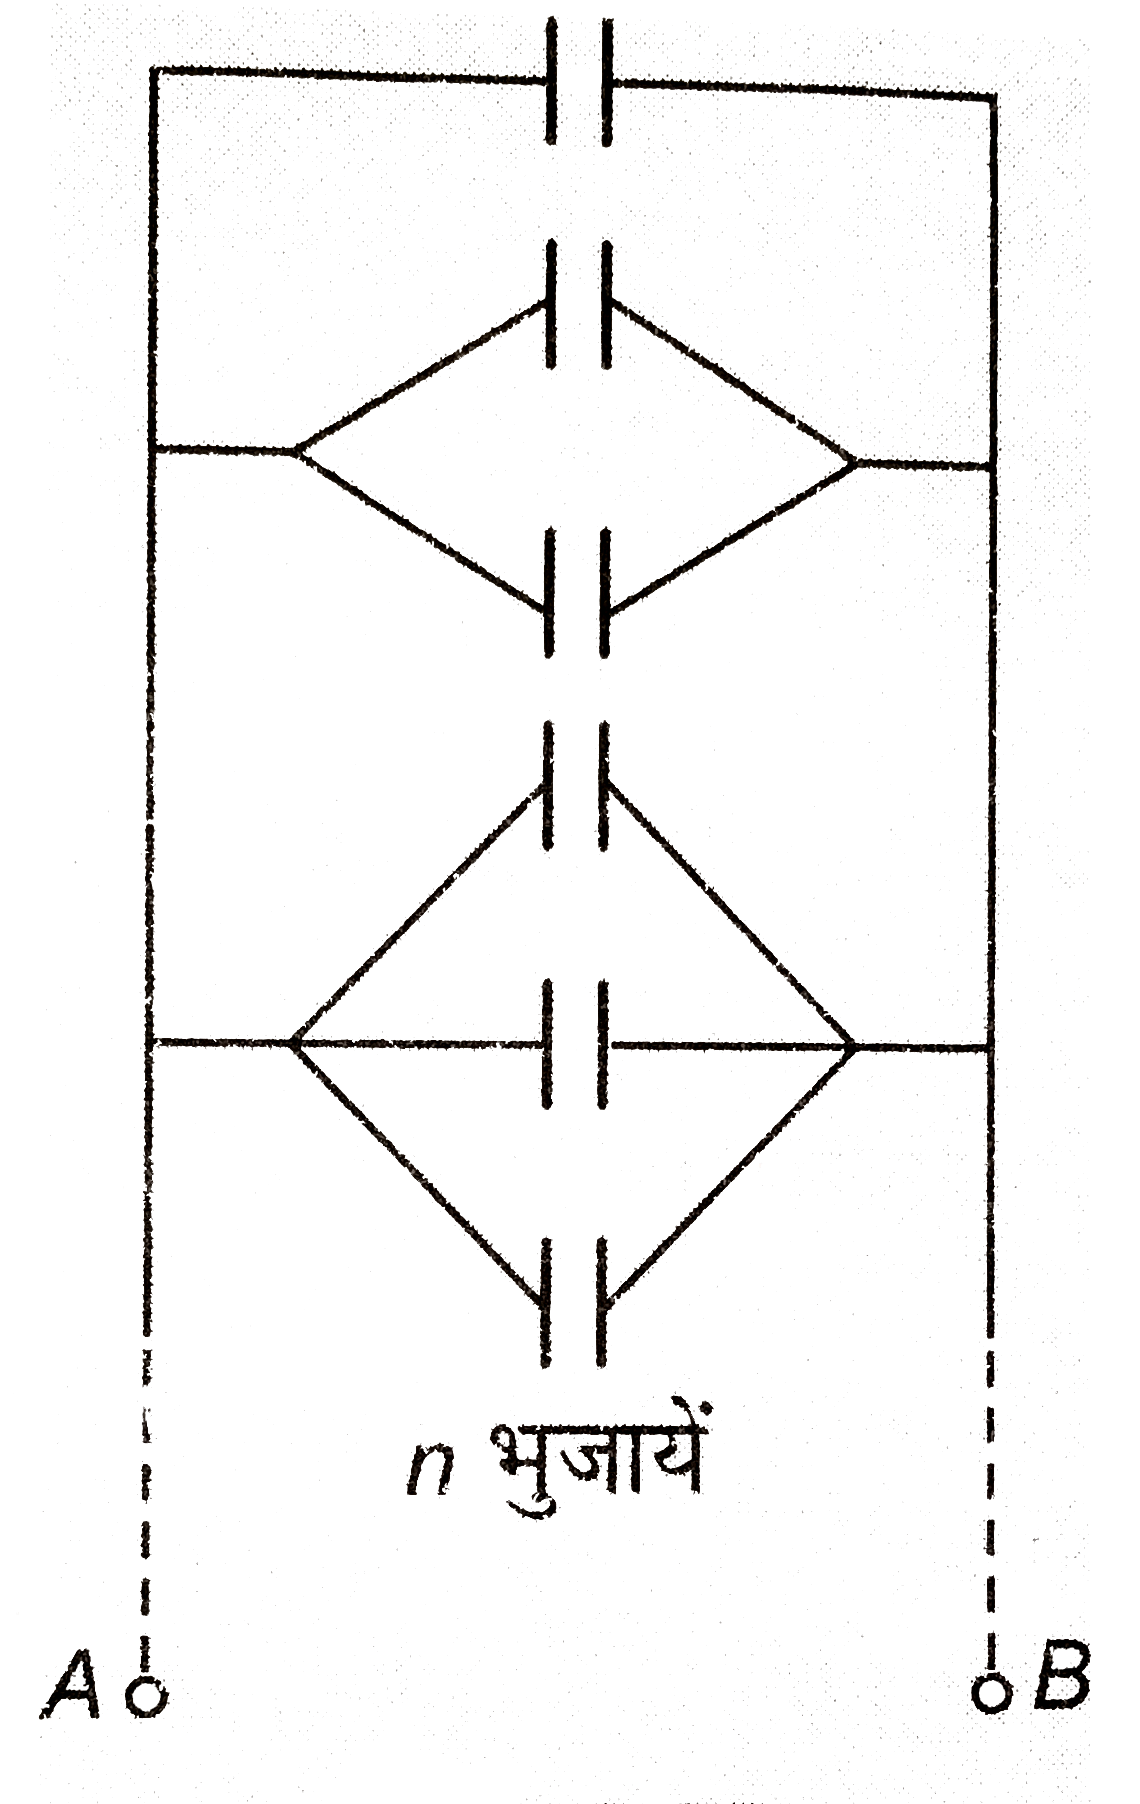 संलग्न चित्र में प्रत्येक संधारित्र की धारिता 1muF है। A or B के बीच तुल्य धारिता ज्ञात कीजिये।